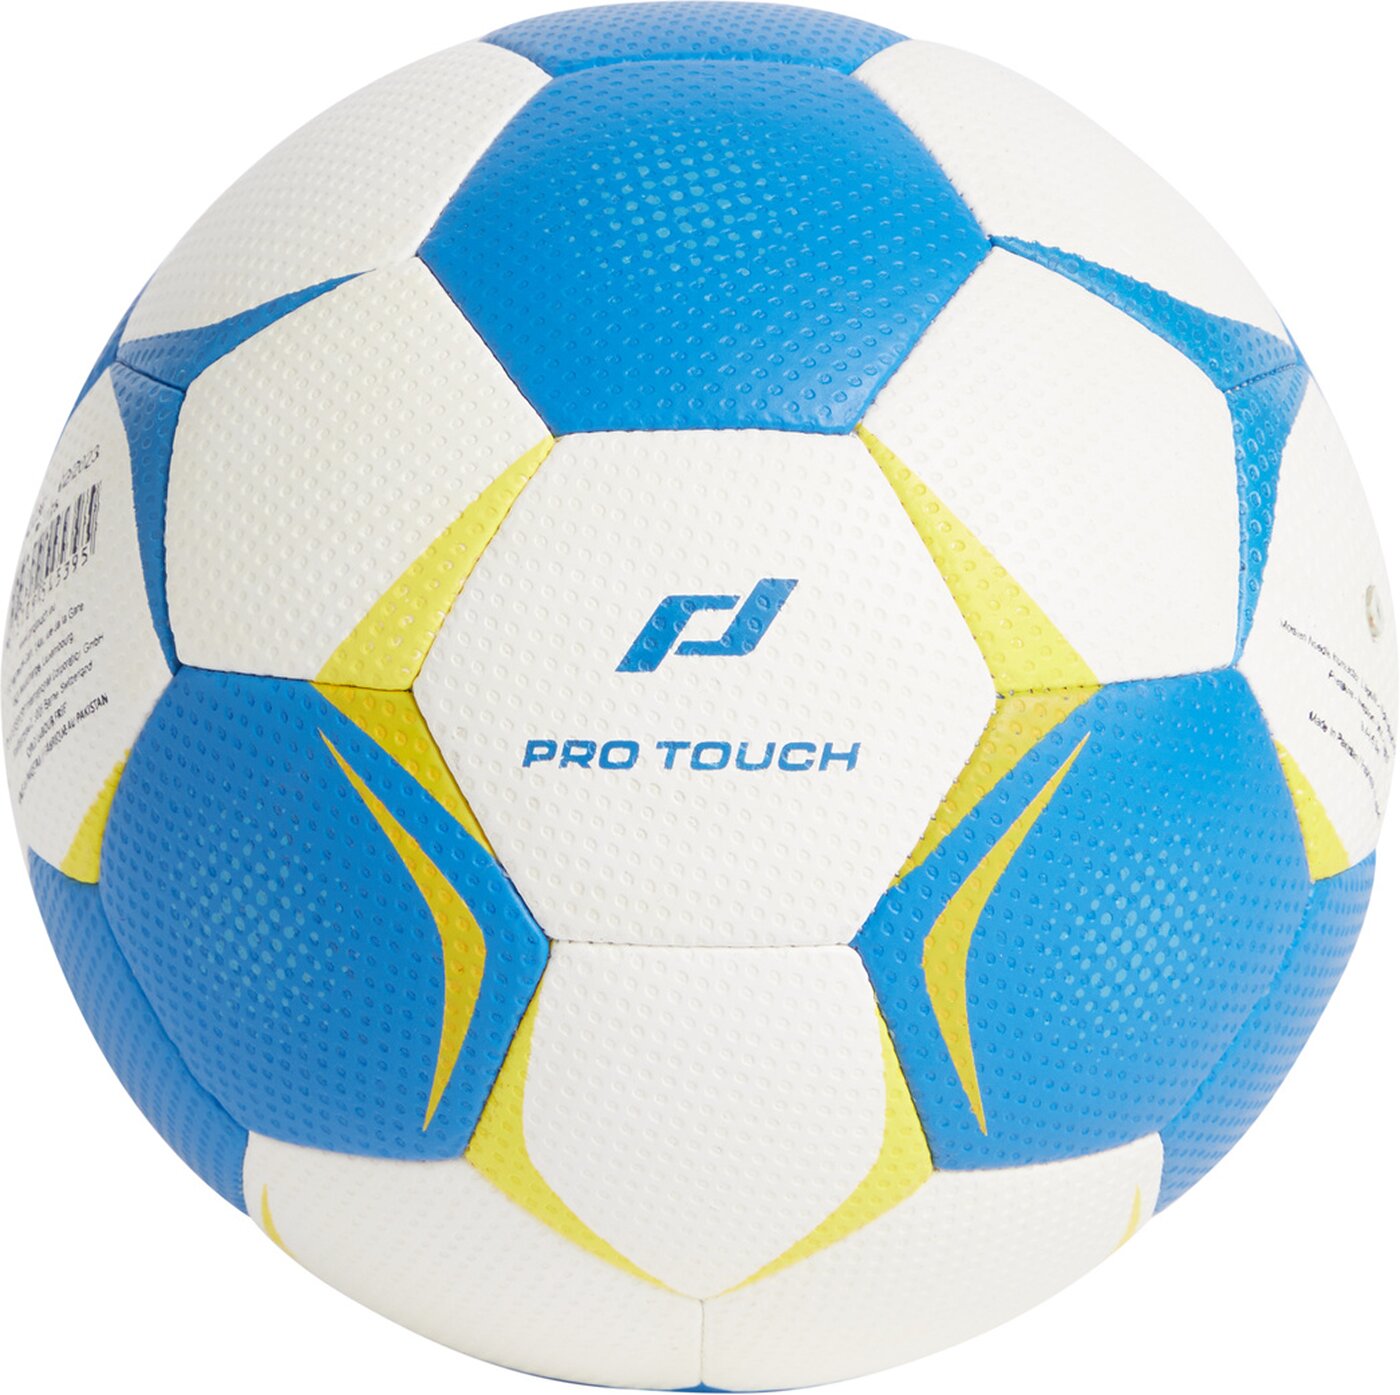 PRO TOUCH Handball online DARK/YELL Court WHITE/BLUE kaufen All 902